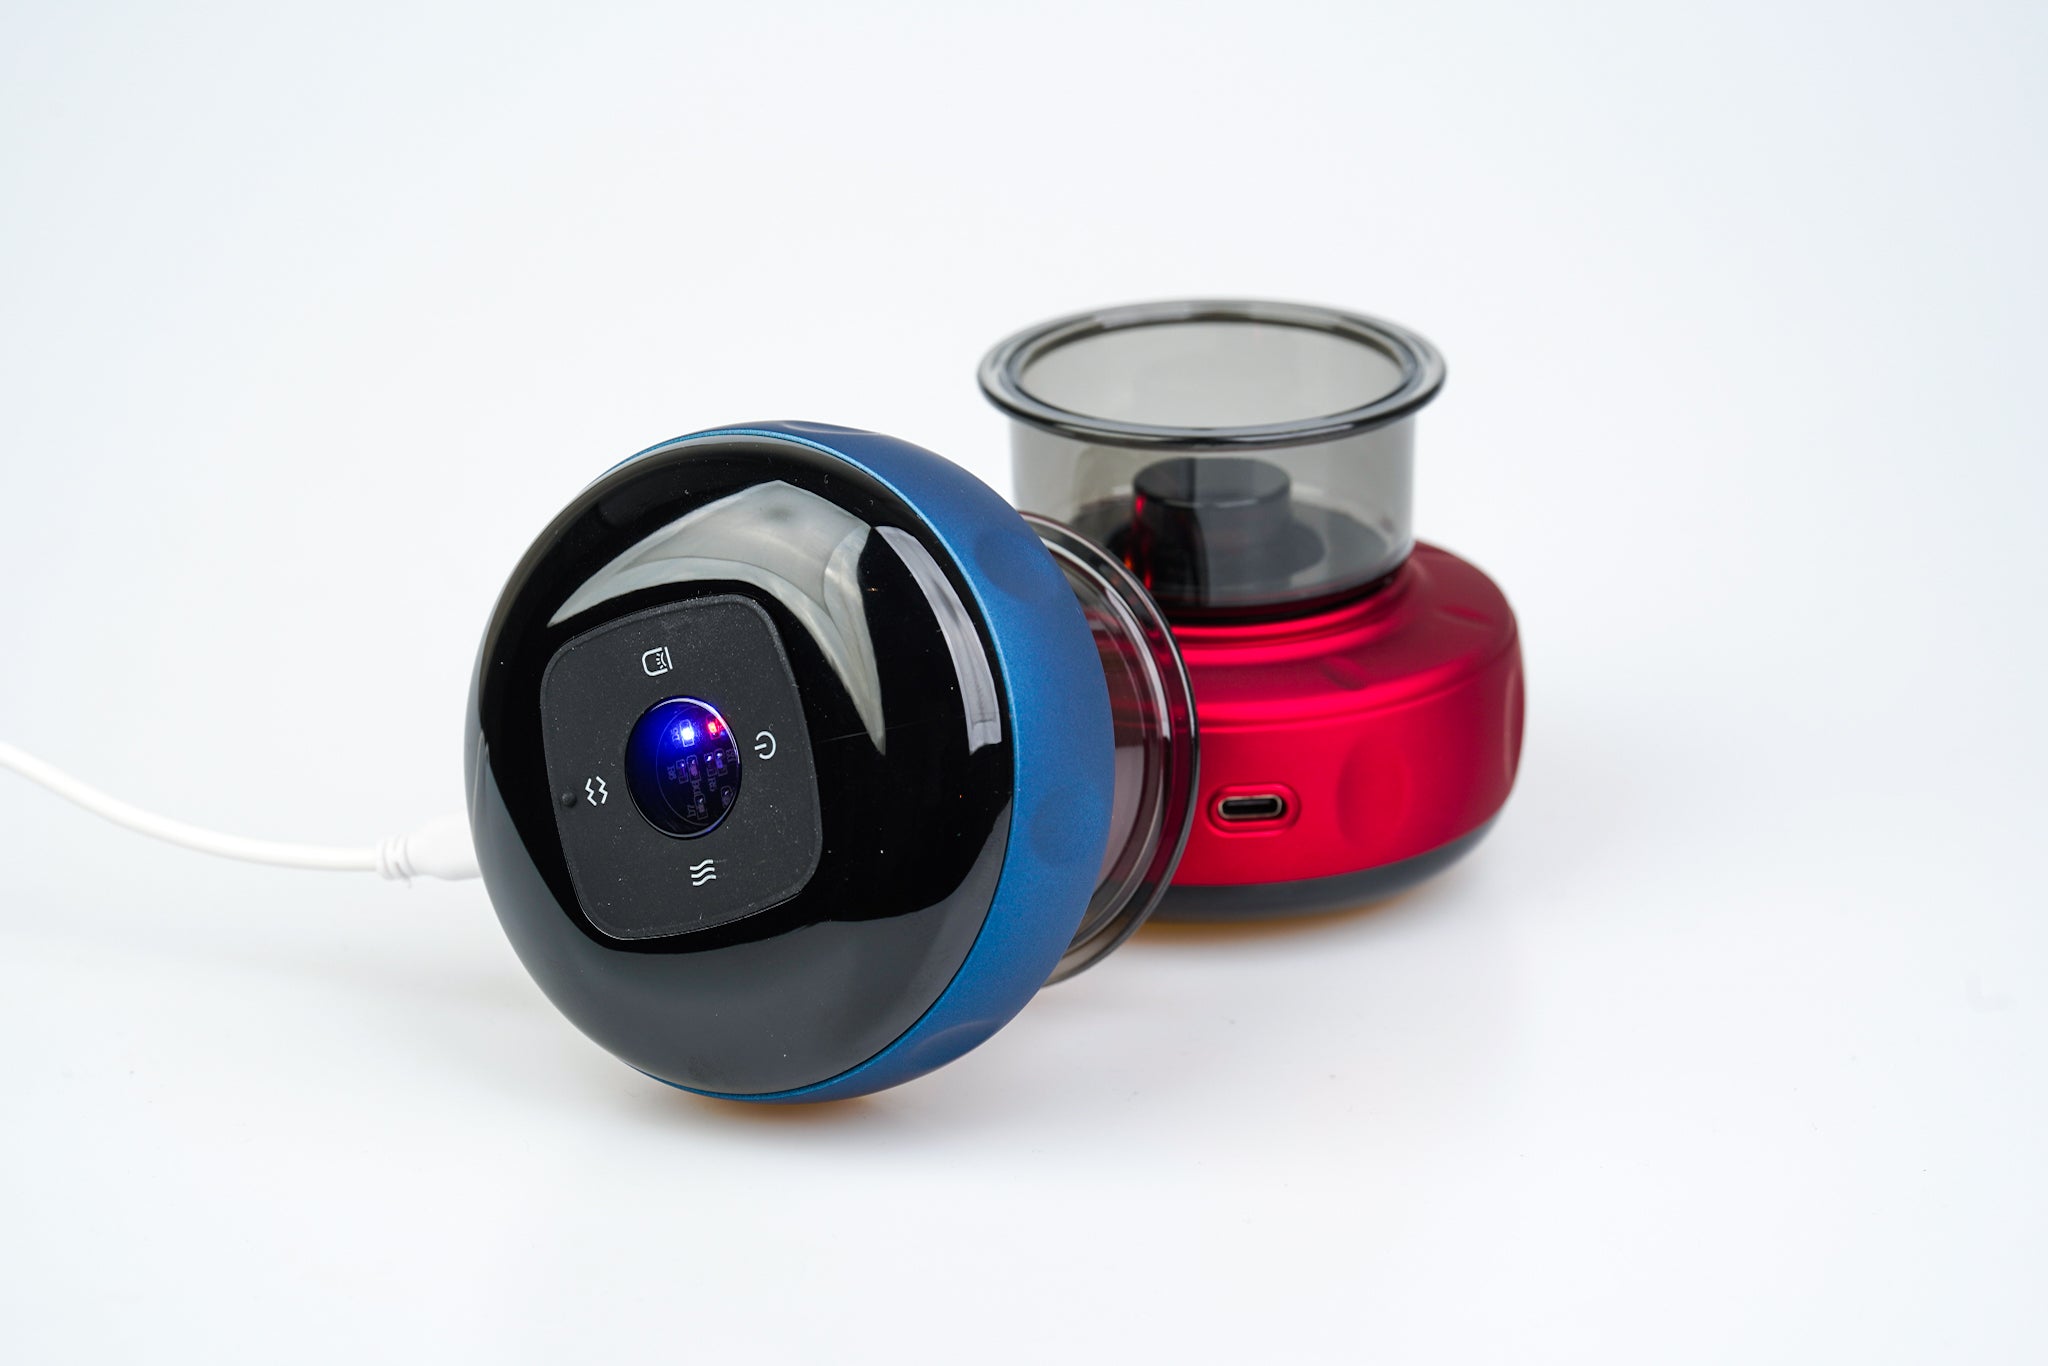 En sort og blå Smart Cup Basic robotstøvsuger placeret ved siden af en rød elkedel på en almindelig hvid baggrund. Støvsugeren har en synlig tænd/sluk-knap og blåt indikatorlys, der repræsenterer et rent nordisk design.